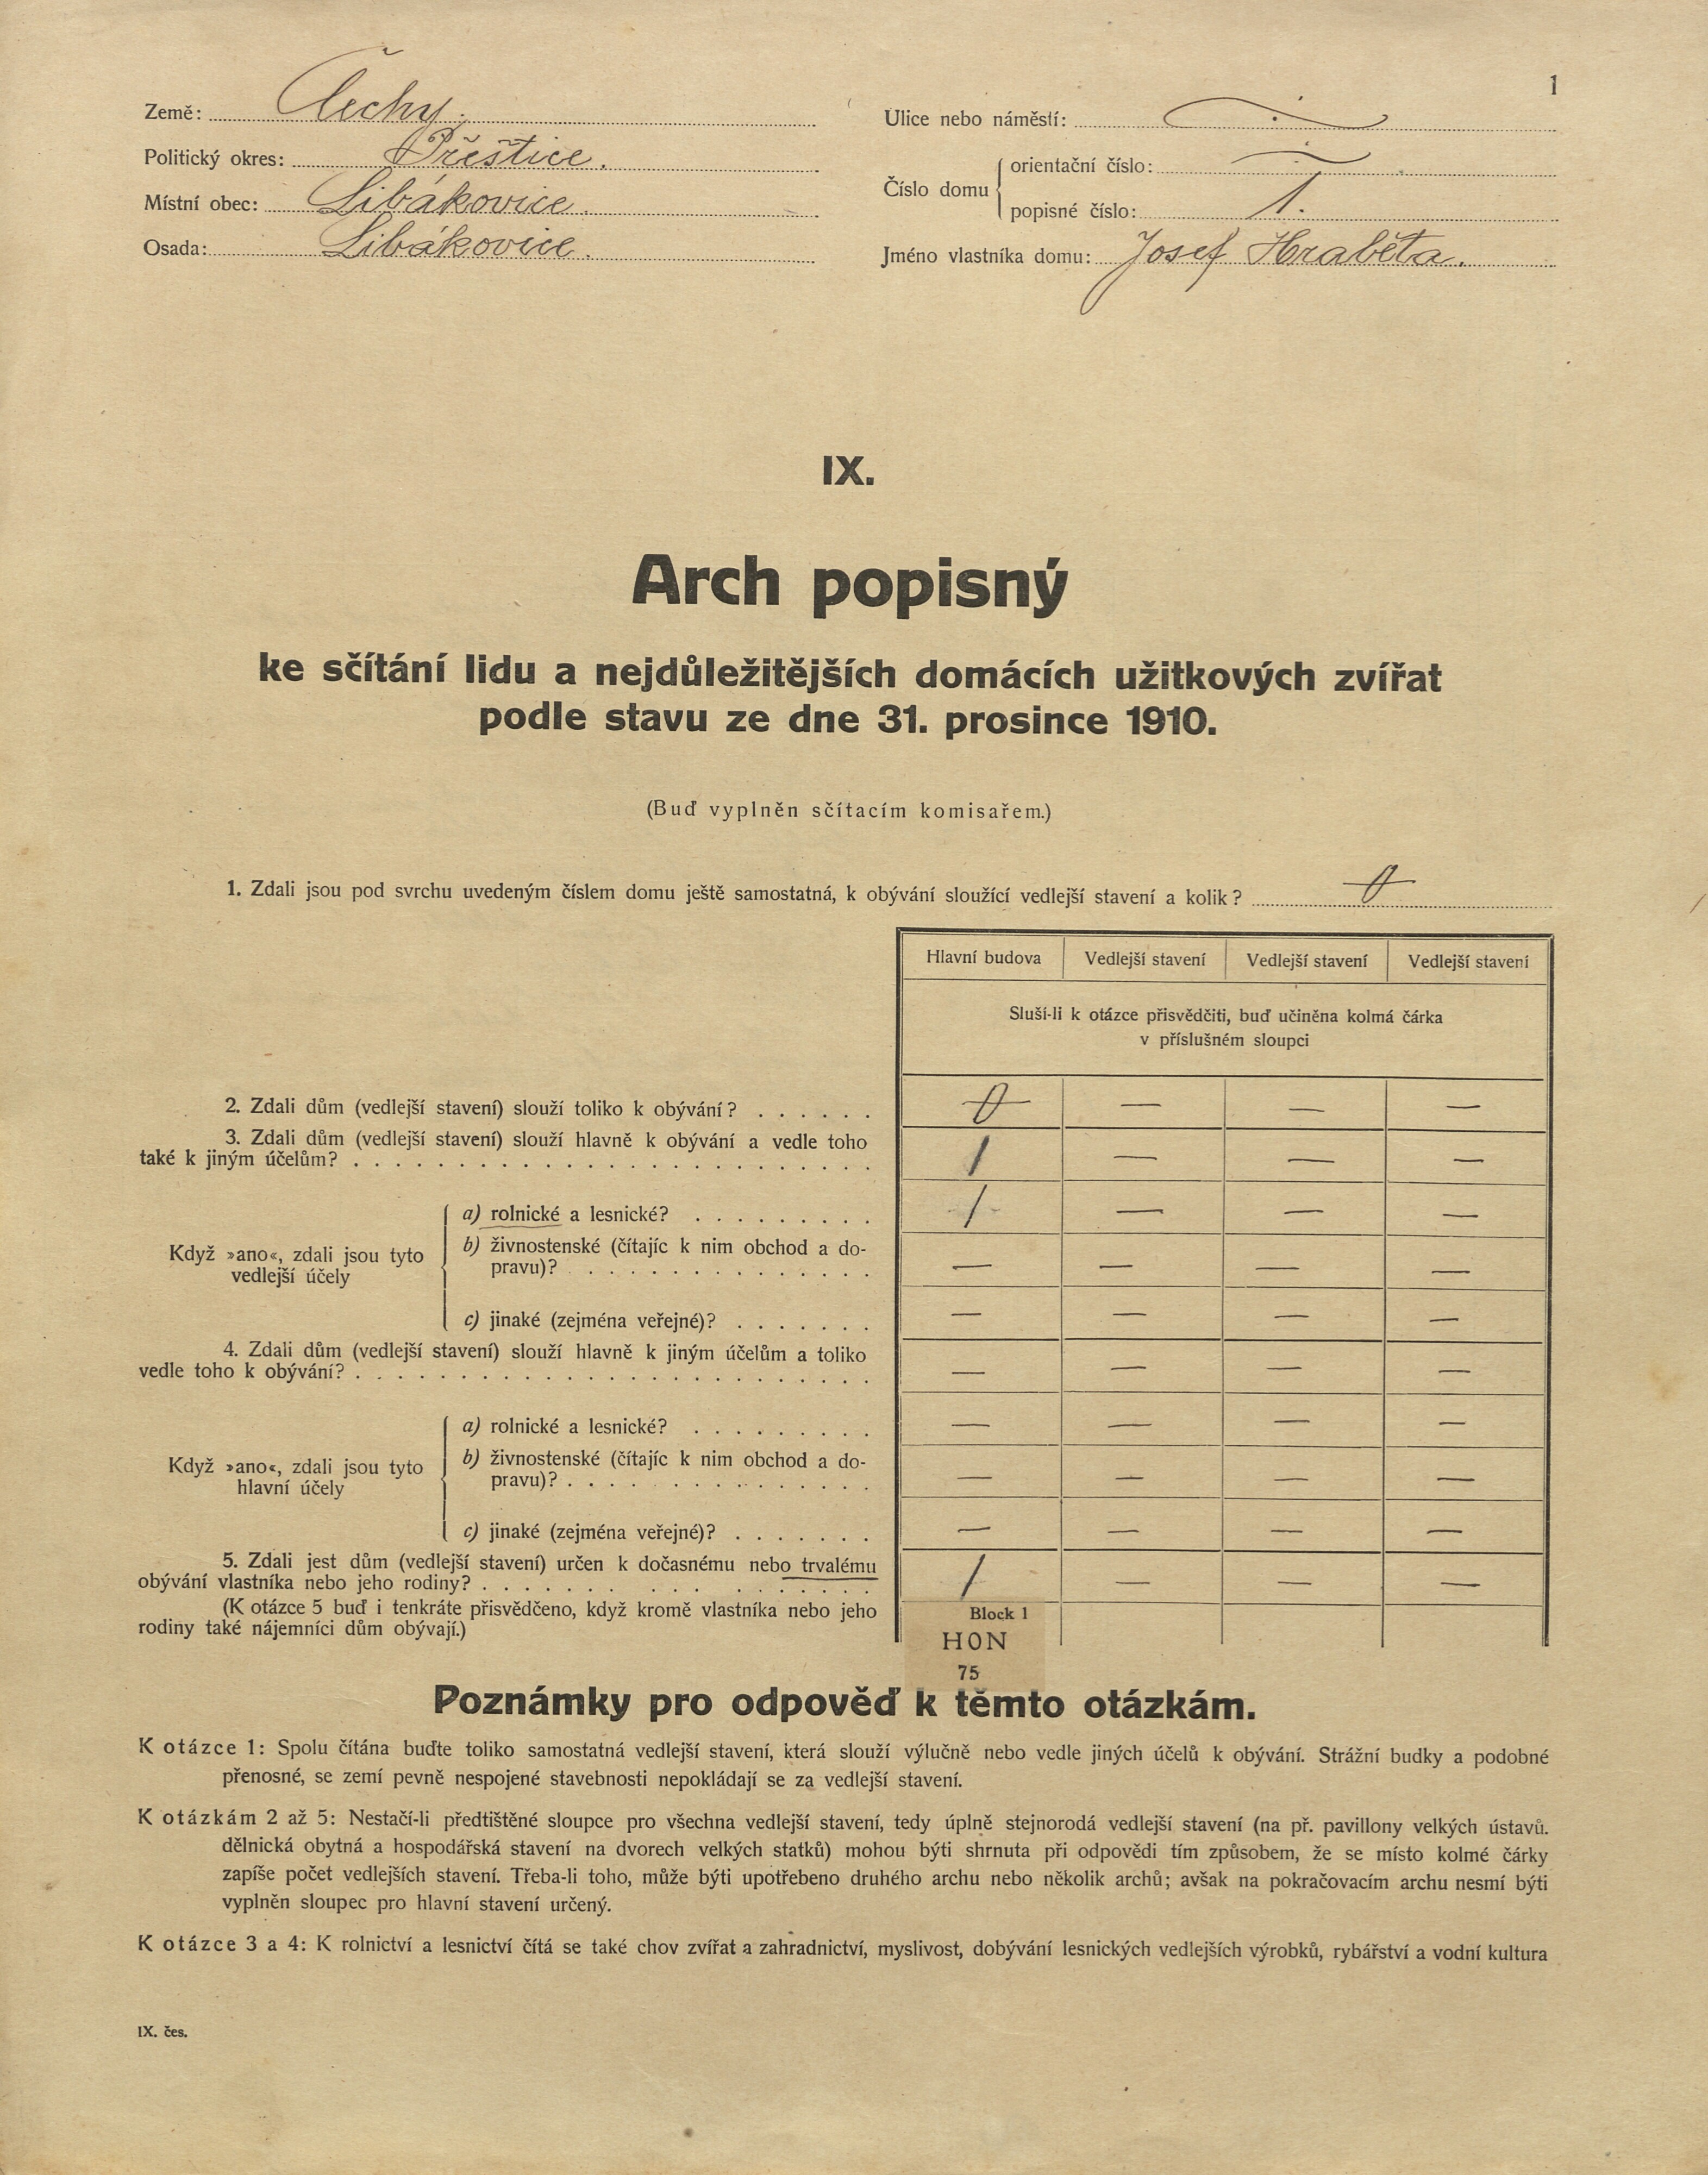 1. soap-pj_00302_census-1910-libakovice-cp001_0010